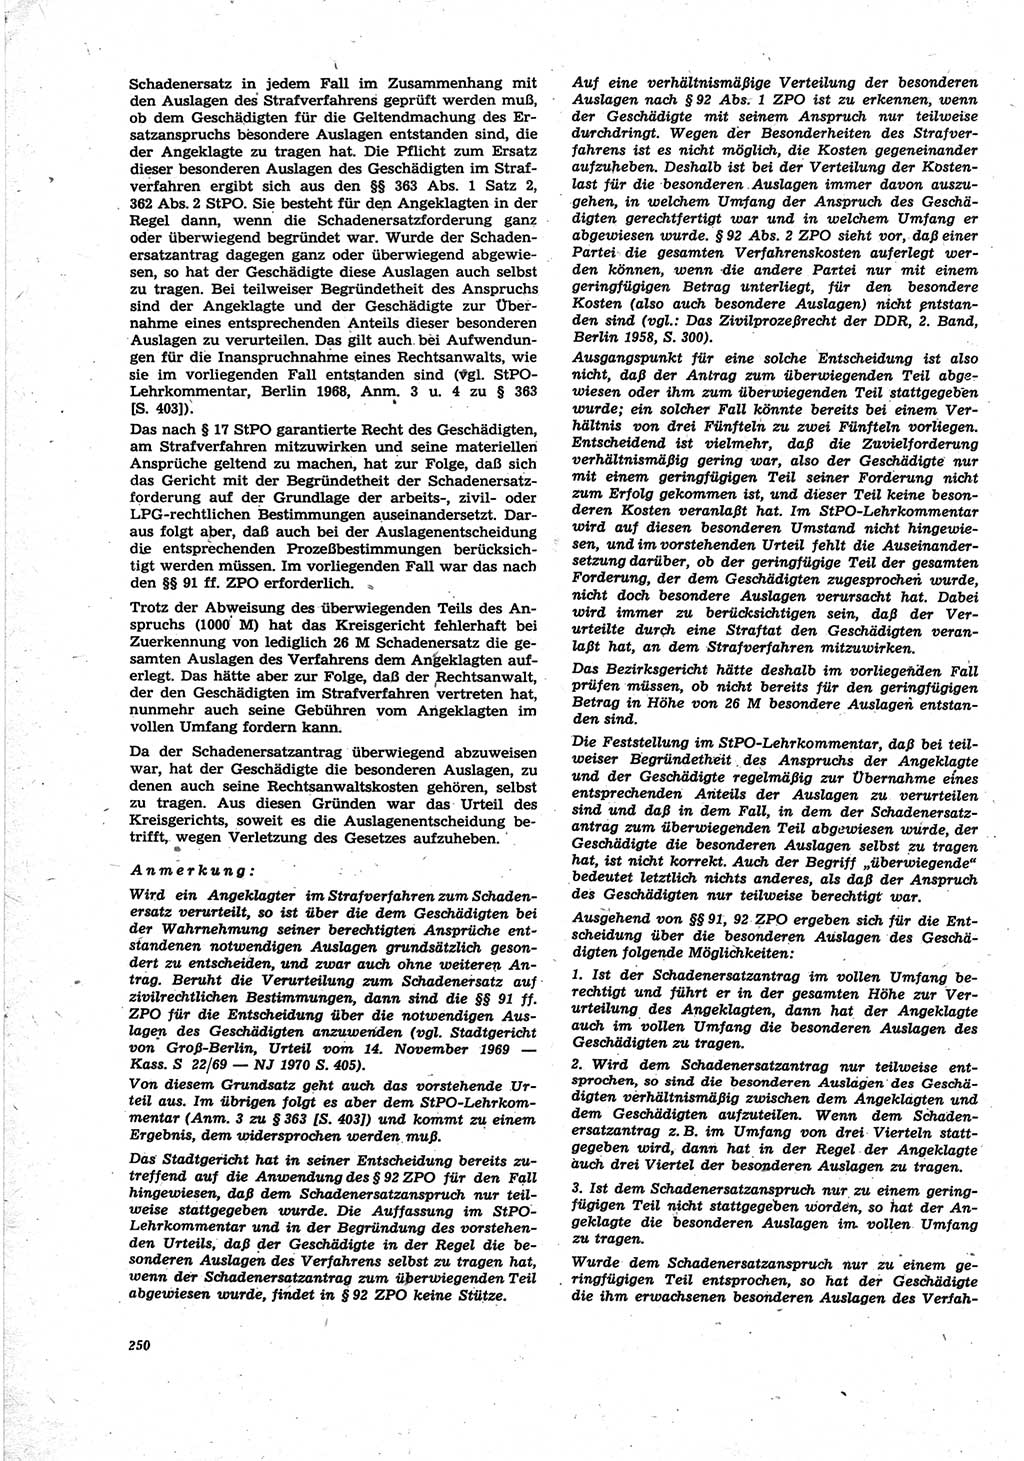 Neue Justiz (NJ), Zeitschrift für Recht und Rechtswissenschaft [Deutsche Demokratische Republik (DDR)], 25. Jahrgang 1971, Seite 250 (NJ DDR 1971, S. 250)